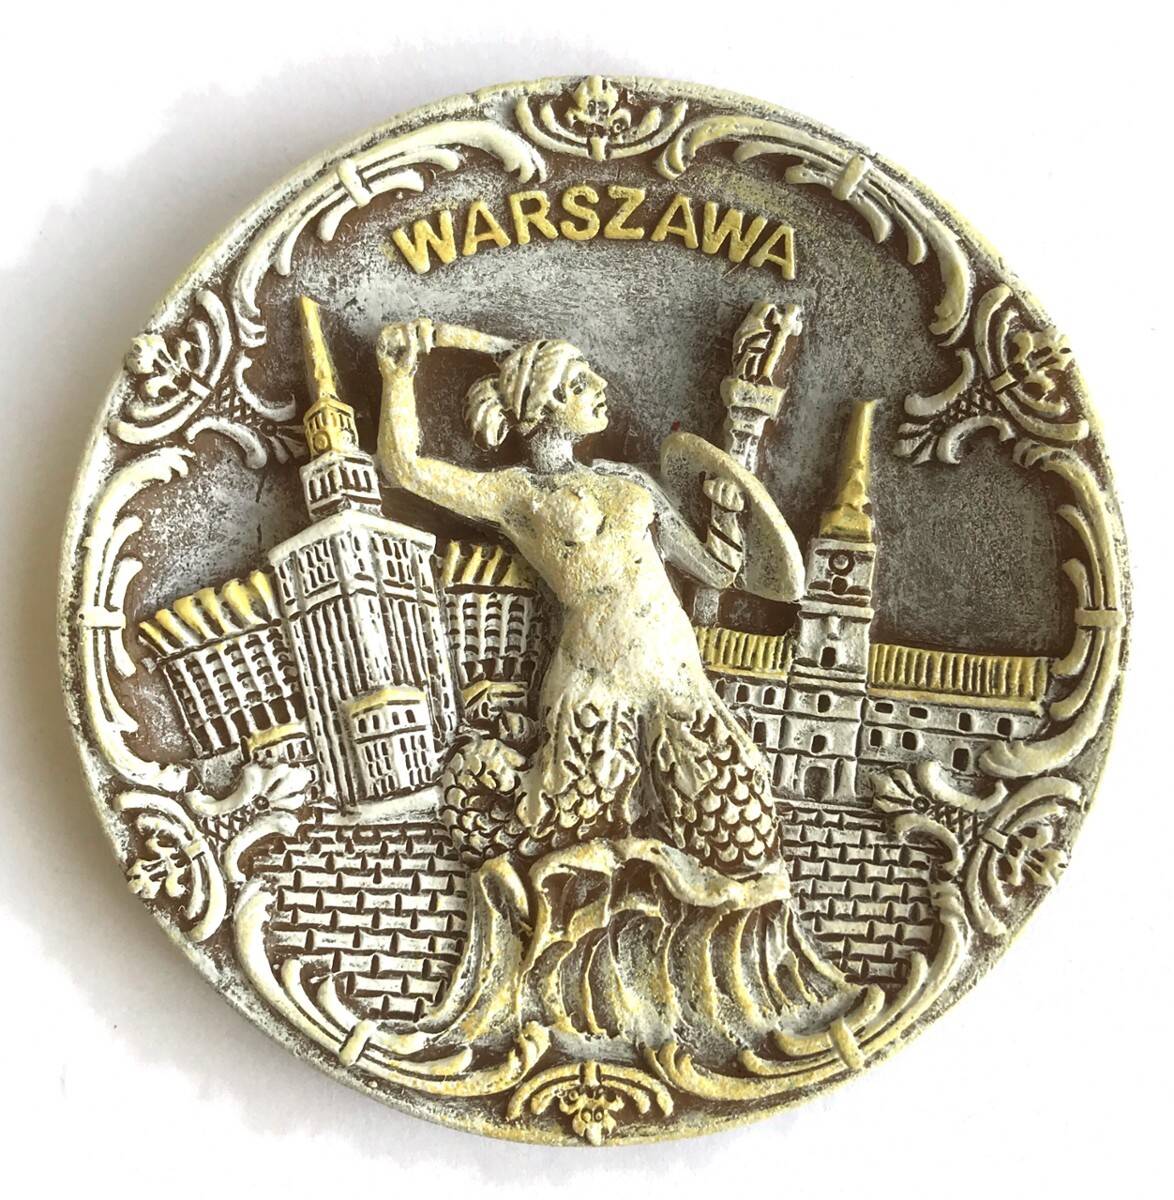 Magnes policeramiczny Warszawa 2PM-058